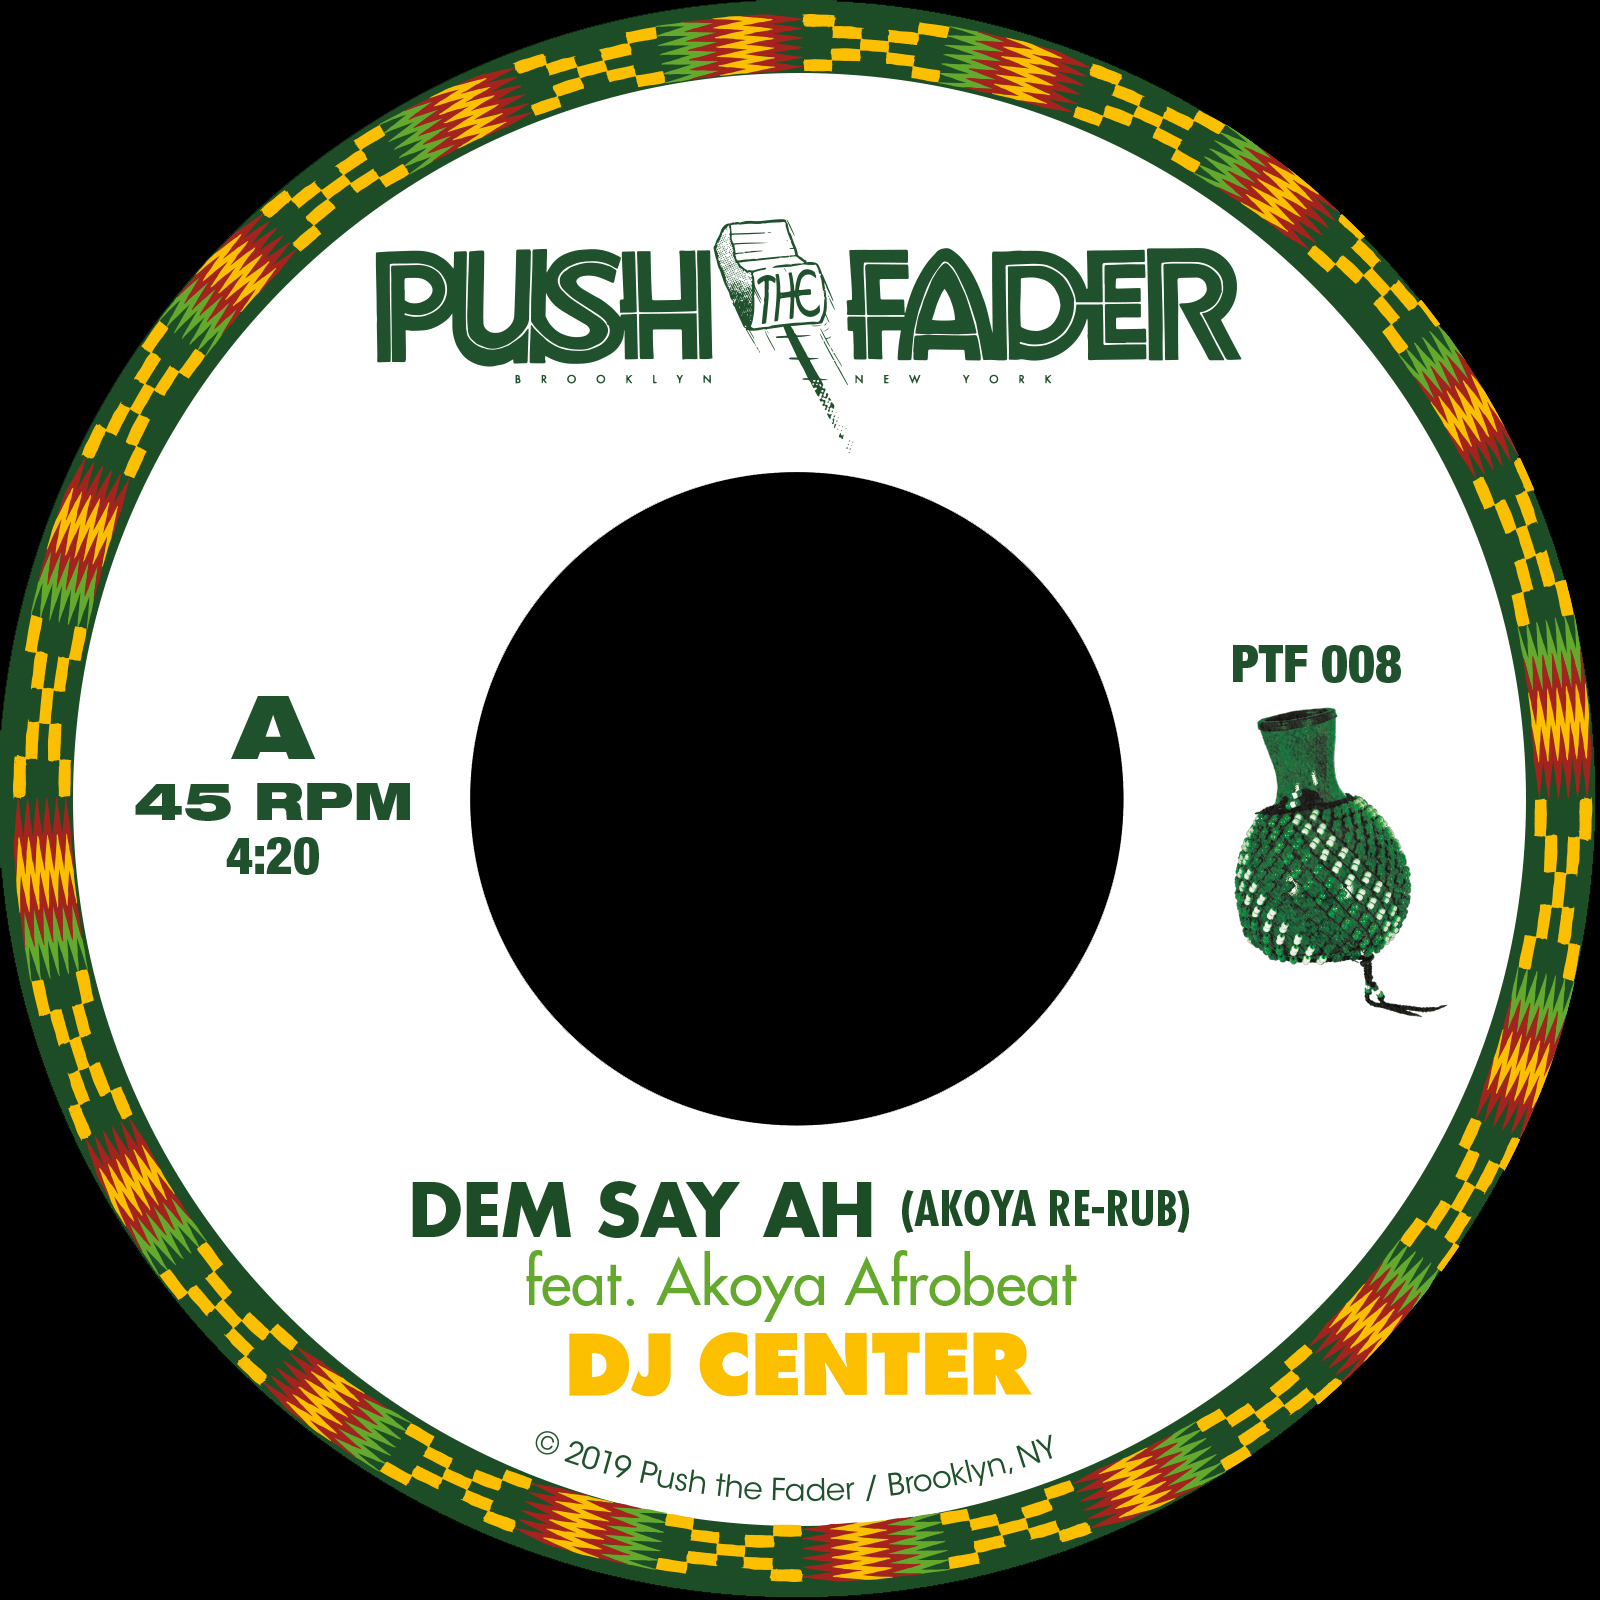 DJ Center & Akoya Afrobeat/DEM SAY AH 7"